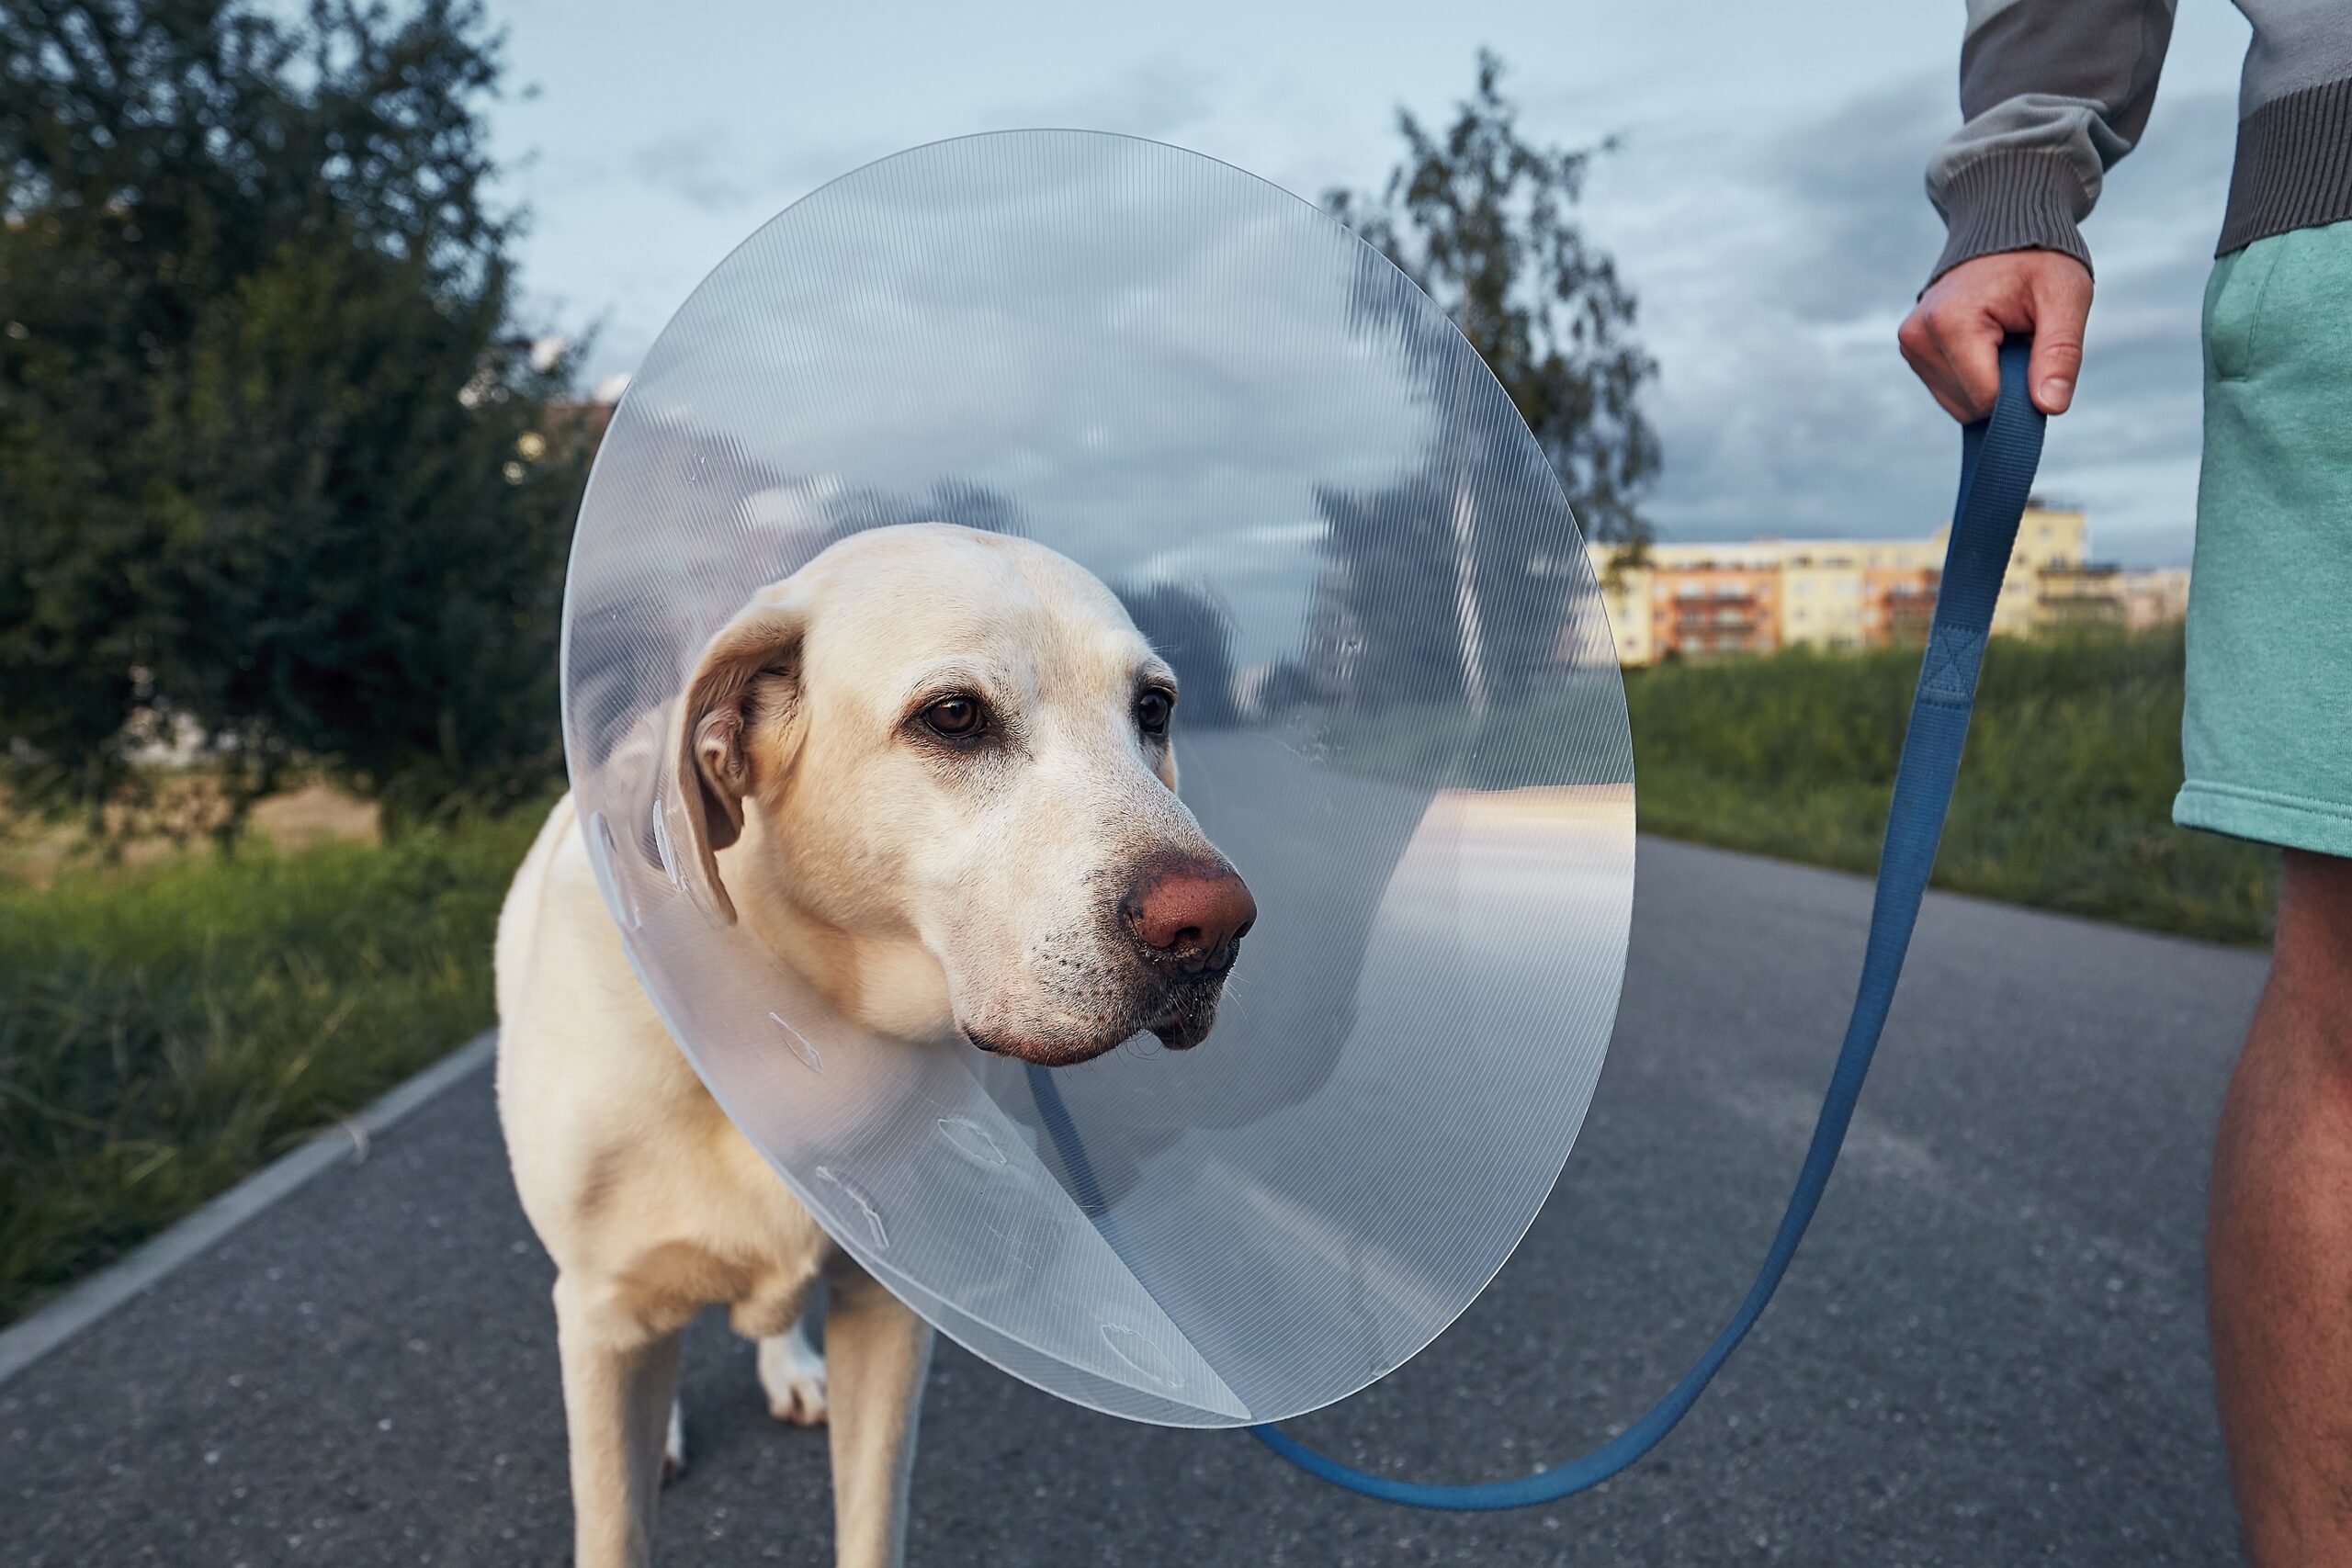 pet insurance dog injury scaled